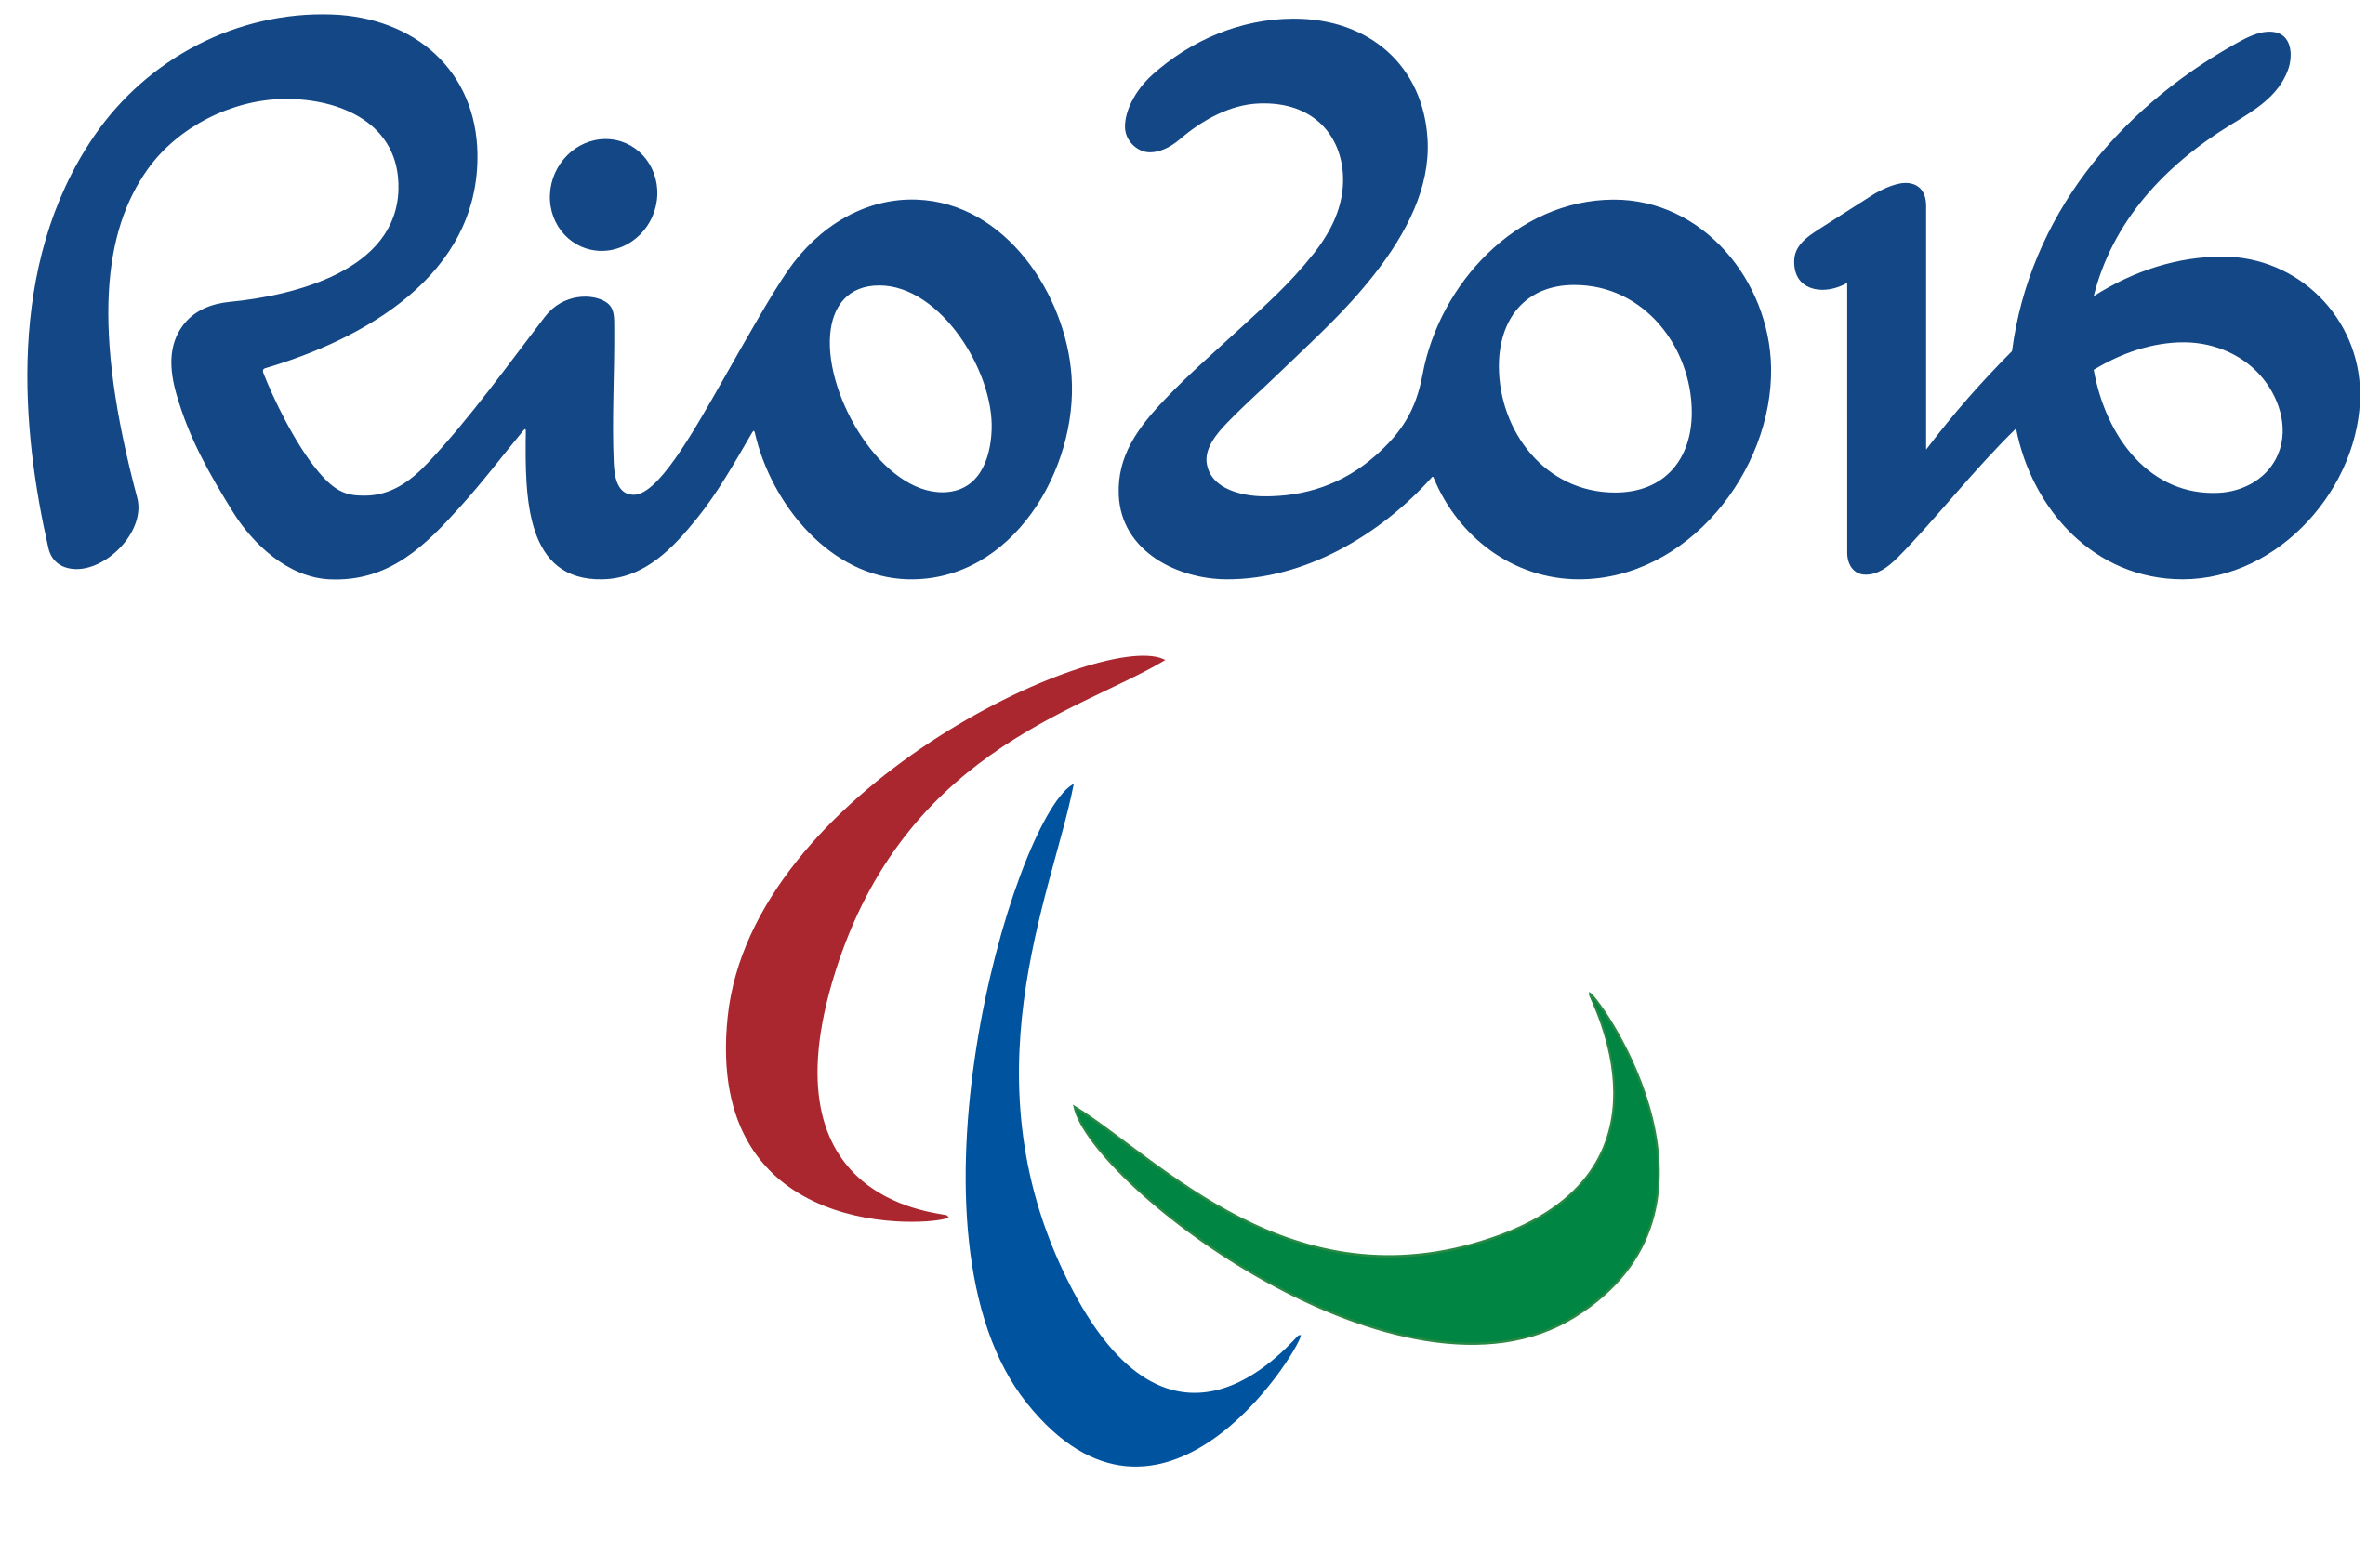 RIO DE JANEIRO - BRASIL - ANO 2016 - Jogos Olímpicos E Jogos 2016 Do  Paralympics, Símbolo Do Redentor De Christ E Logotipos Foto de Stock  Editorial - Ilustração de selo, punho: 71287998